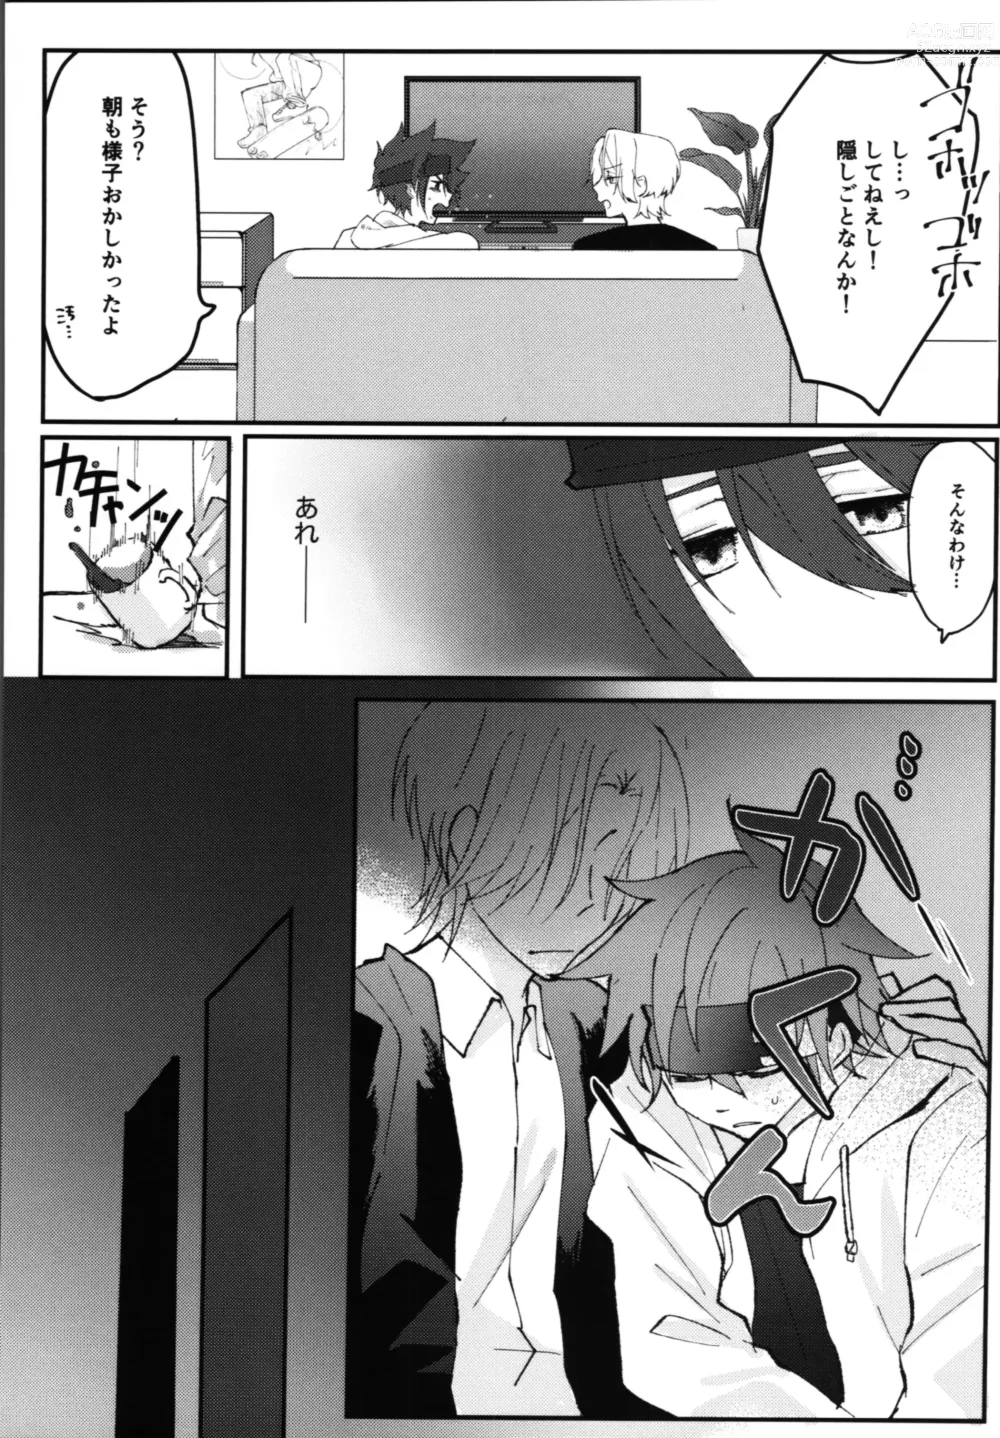 Page 12 of doujinshi Kimi no negao ni koishiteru